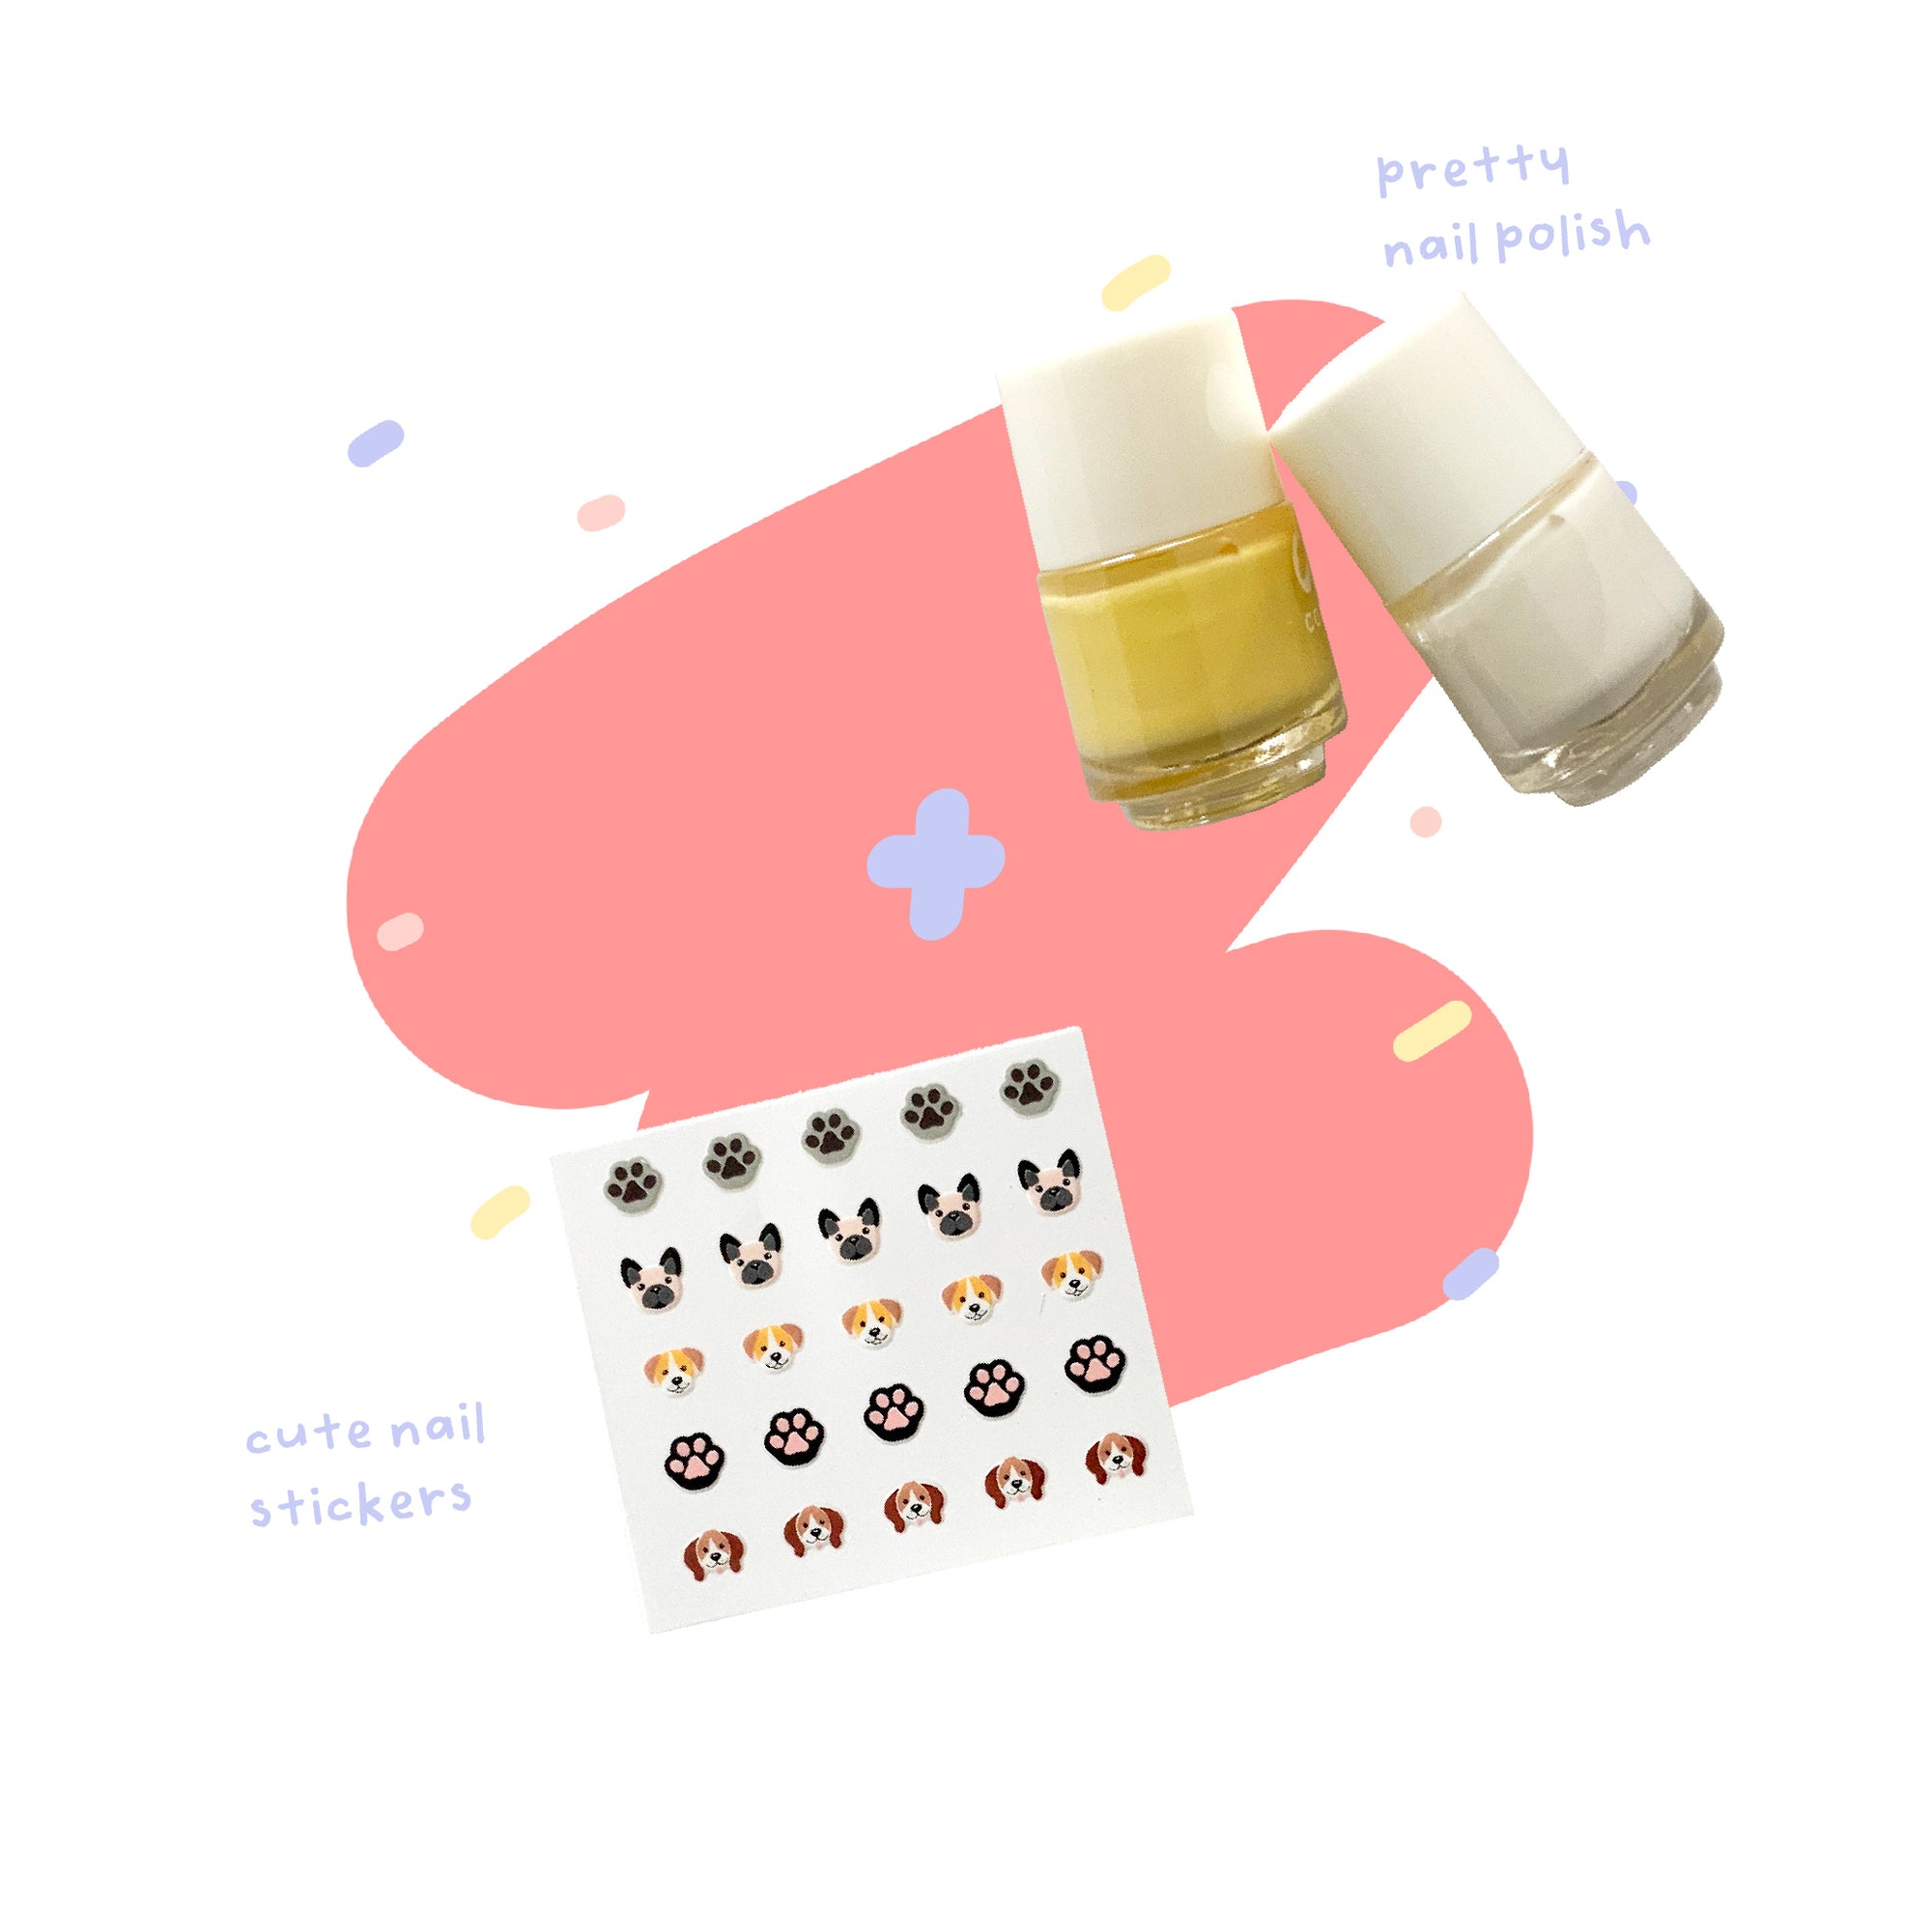 beauty kit - animals nail sticker with vanilla white and honey yellow nail polish